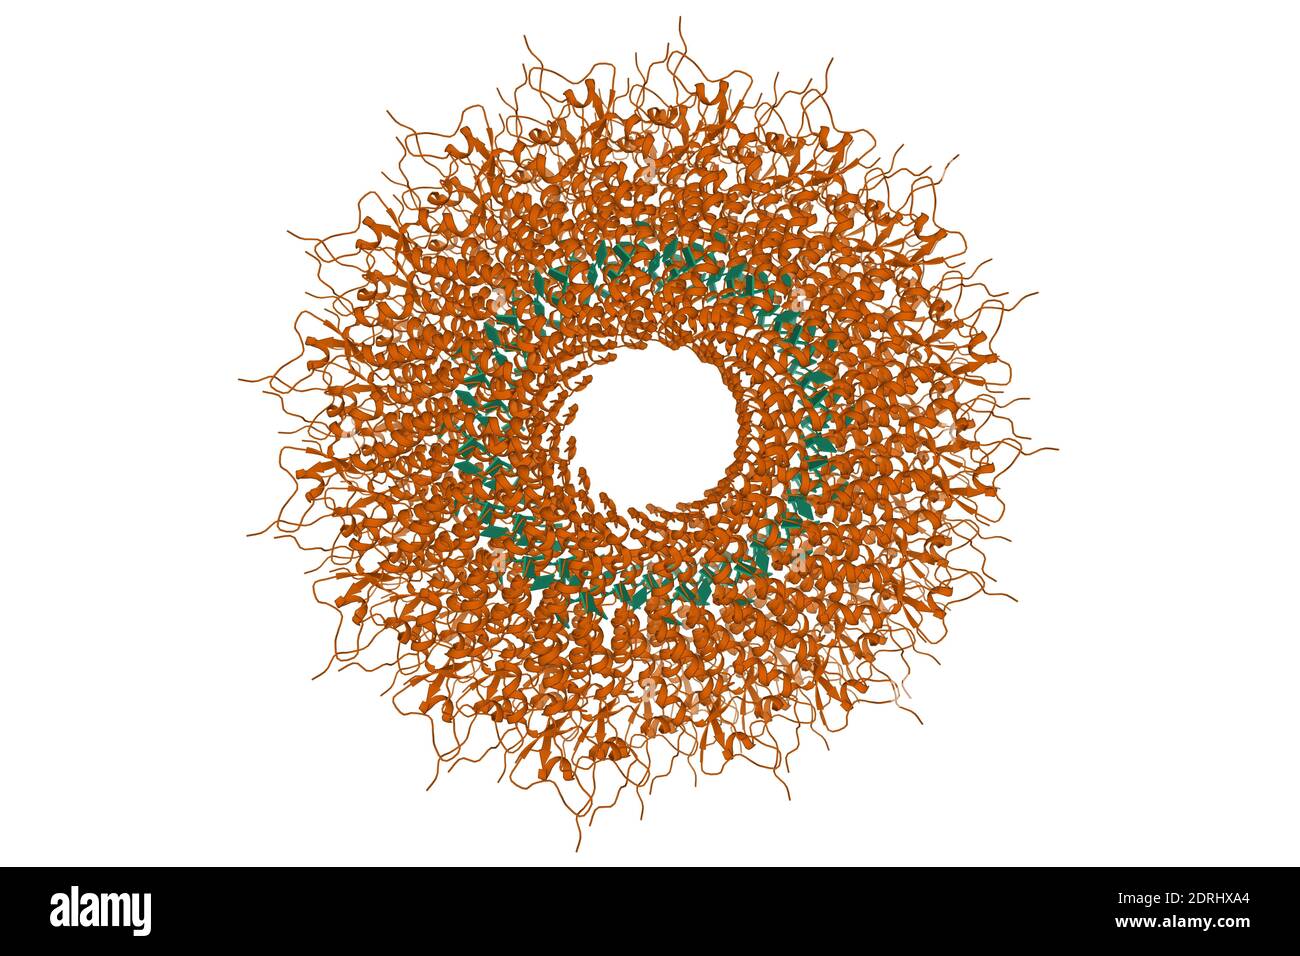 Hochauflösende Struktur des Tabakmosaikvirus, 3D-Cartoon-Modell, weißer Hintergrund Stockfoto